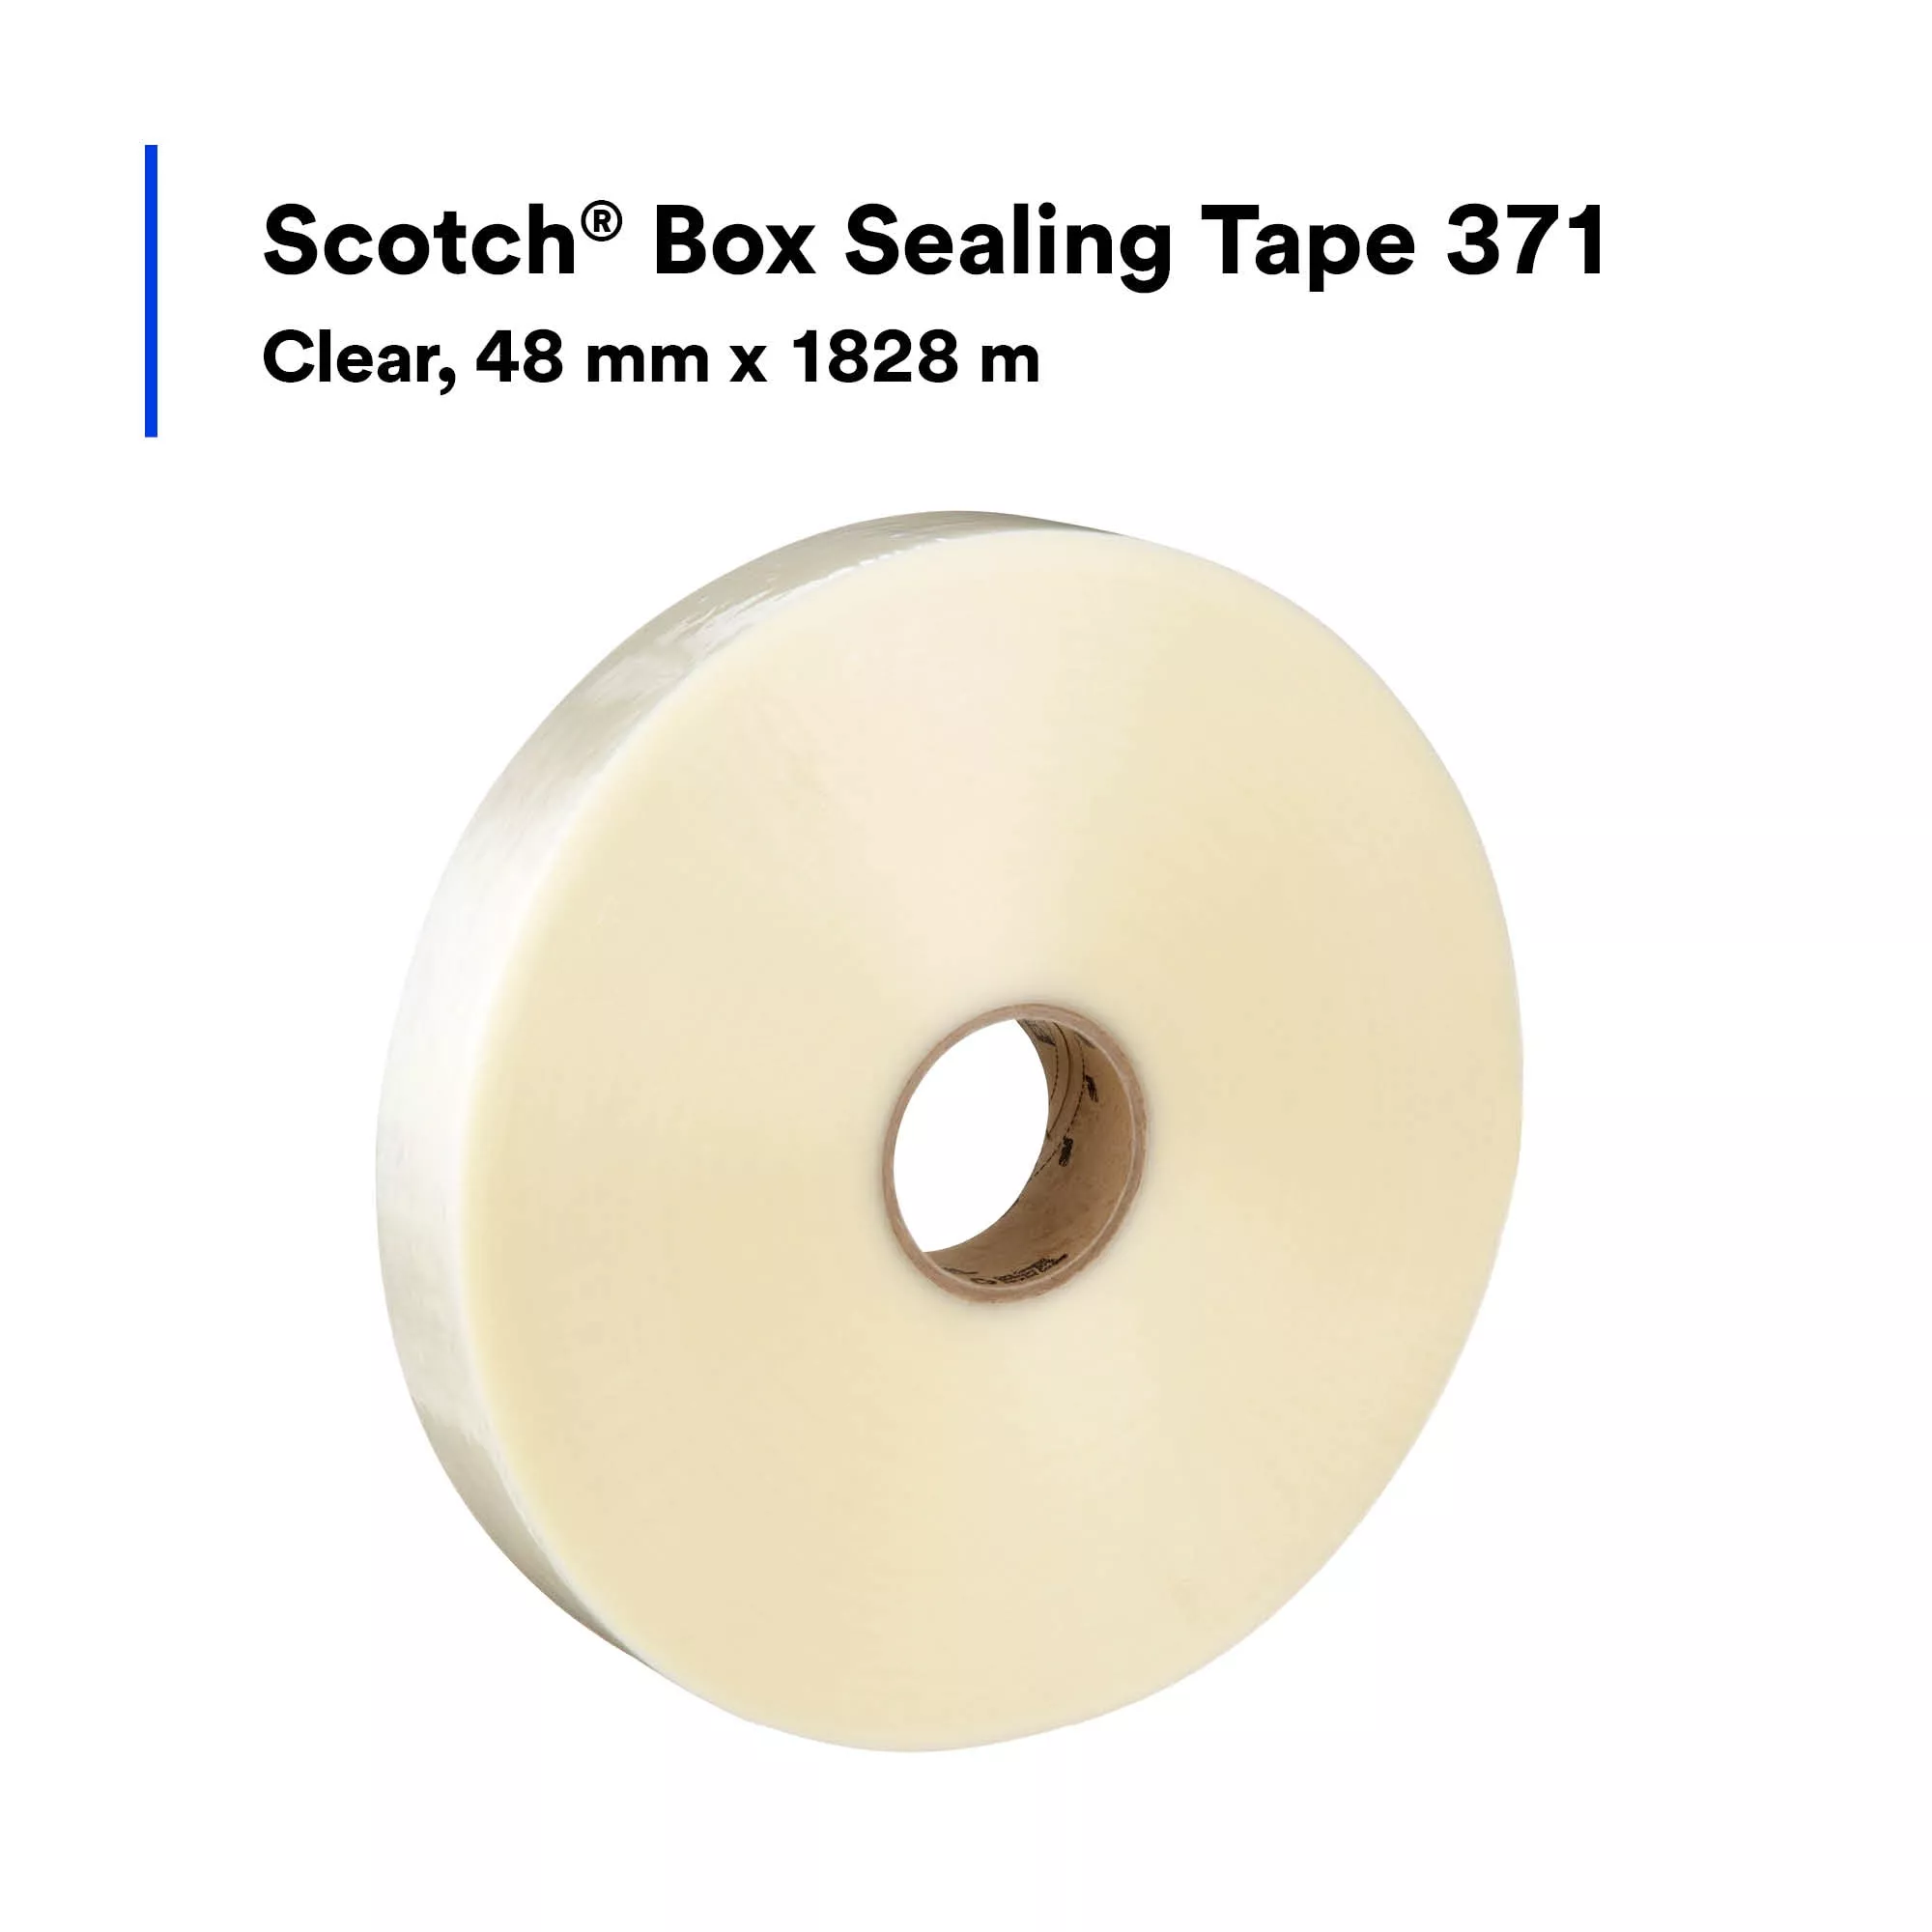 SKU 7100134419 | Scotch® Box Sealing Tape 371